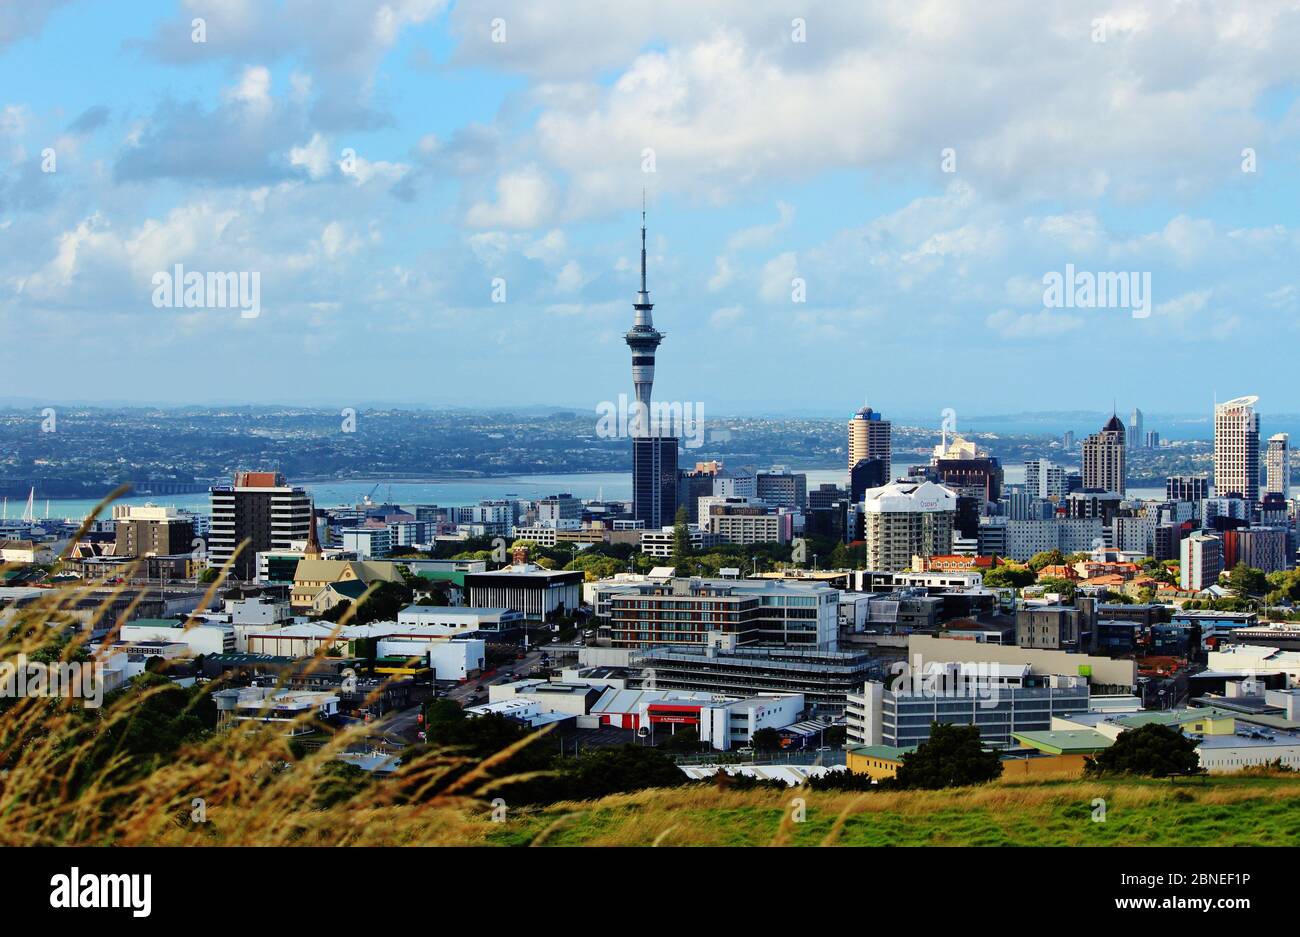 Nếu bạn yêu thích kiến trúc tinh tế và muốn ngắm toàn cảnh thành phố Auckland, Sky Tower là địa điểm không thể bỏ qua. Với độ cao hơn 300m, Sky Tower cung cấp cho bạn tầm nhìn đẹp như tranh về thành phố sôi động này. Hãy đến và khám phá những trải nghiệm tuyệt vời tại đây.